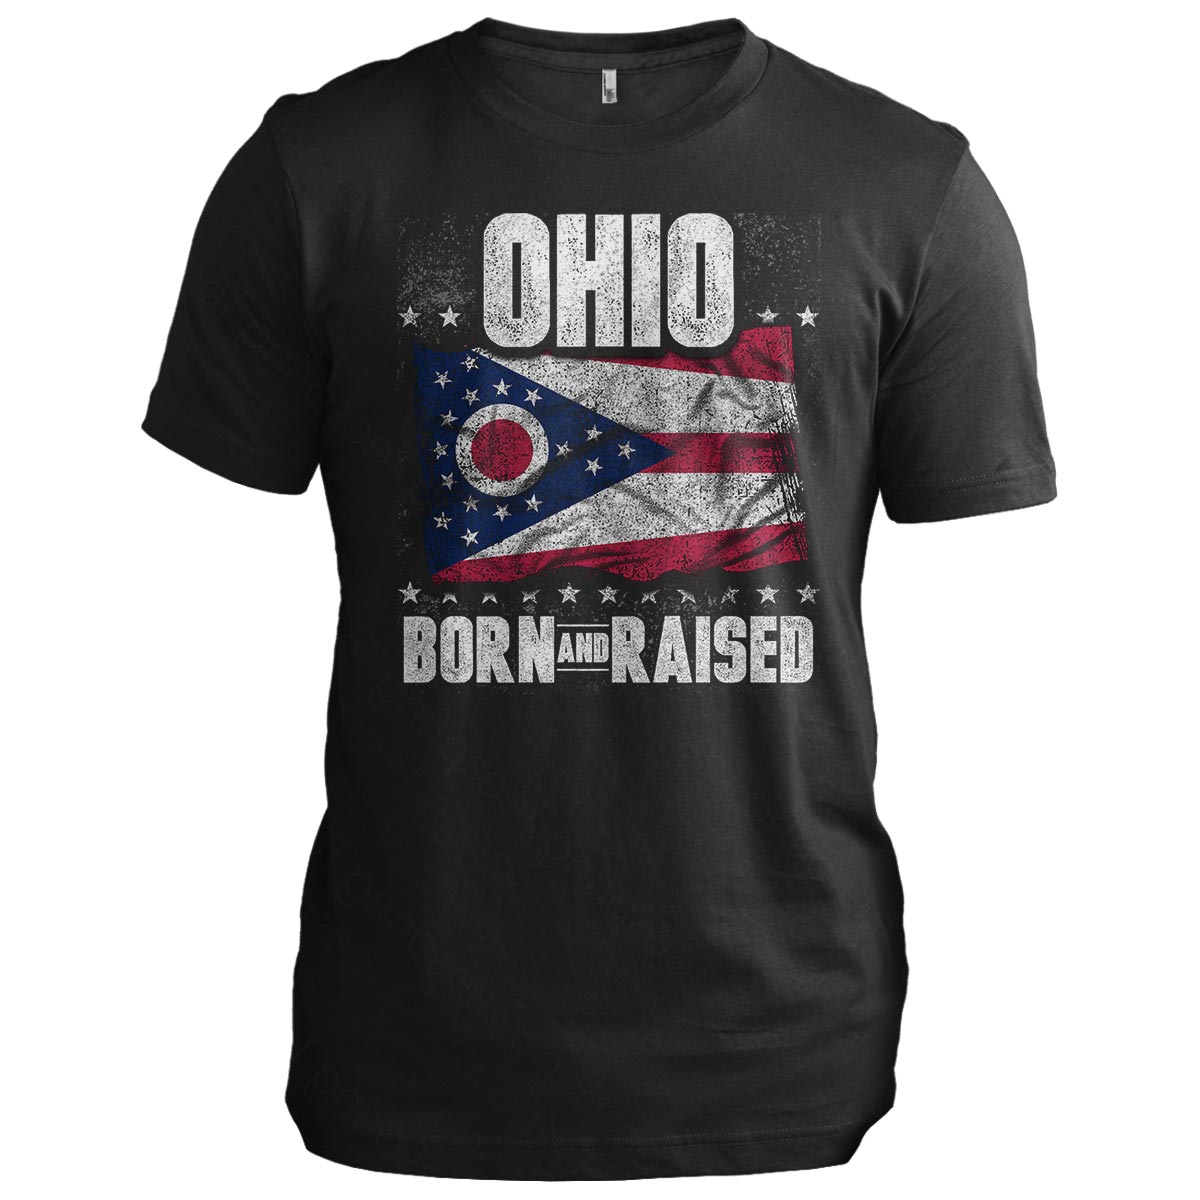 Ohio: Born and Raised